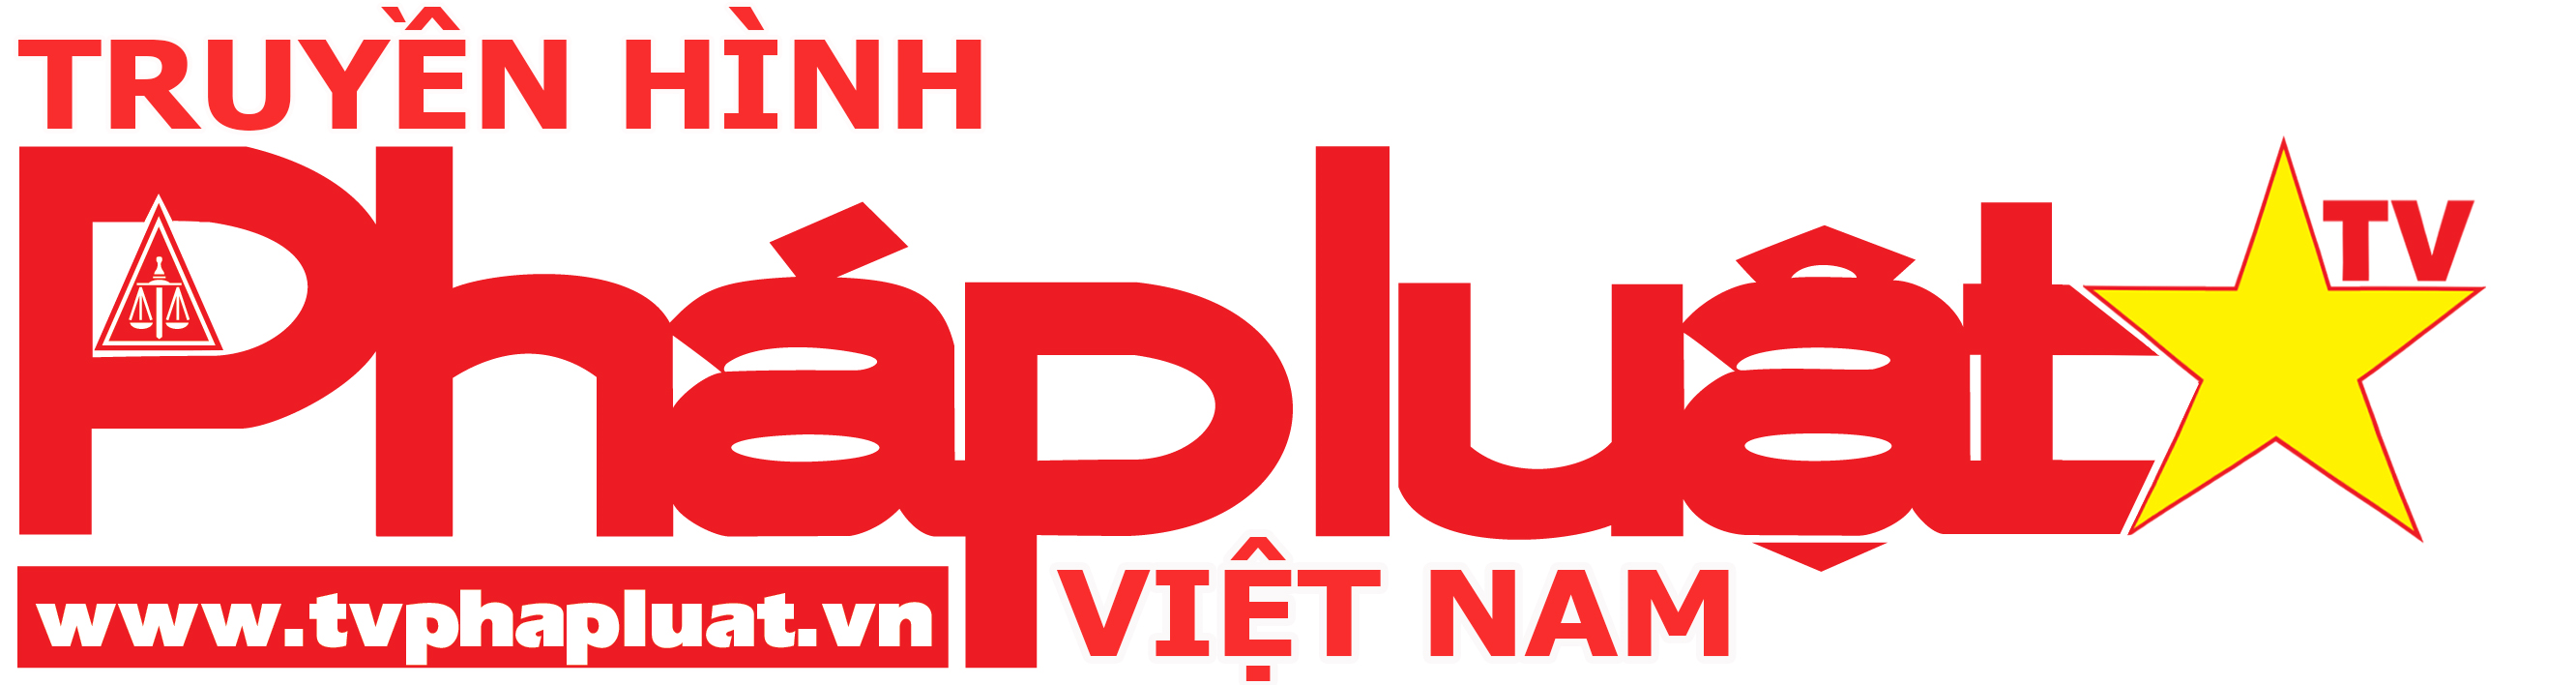 Logo Truyền hình Pháp luật Việt Nam